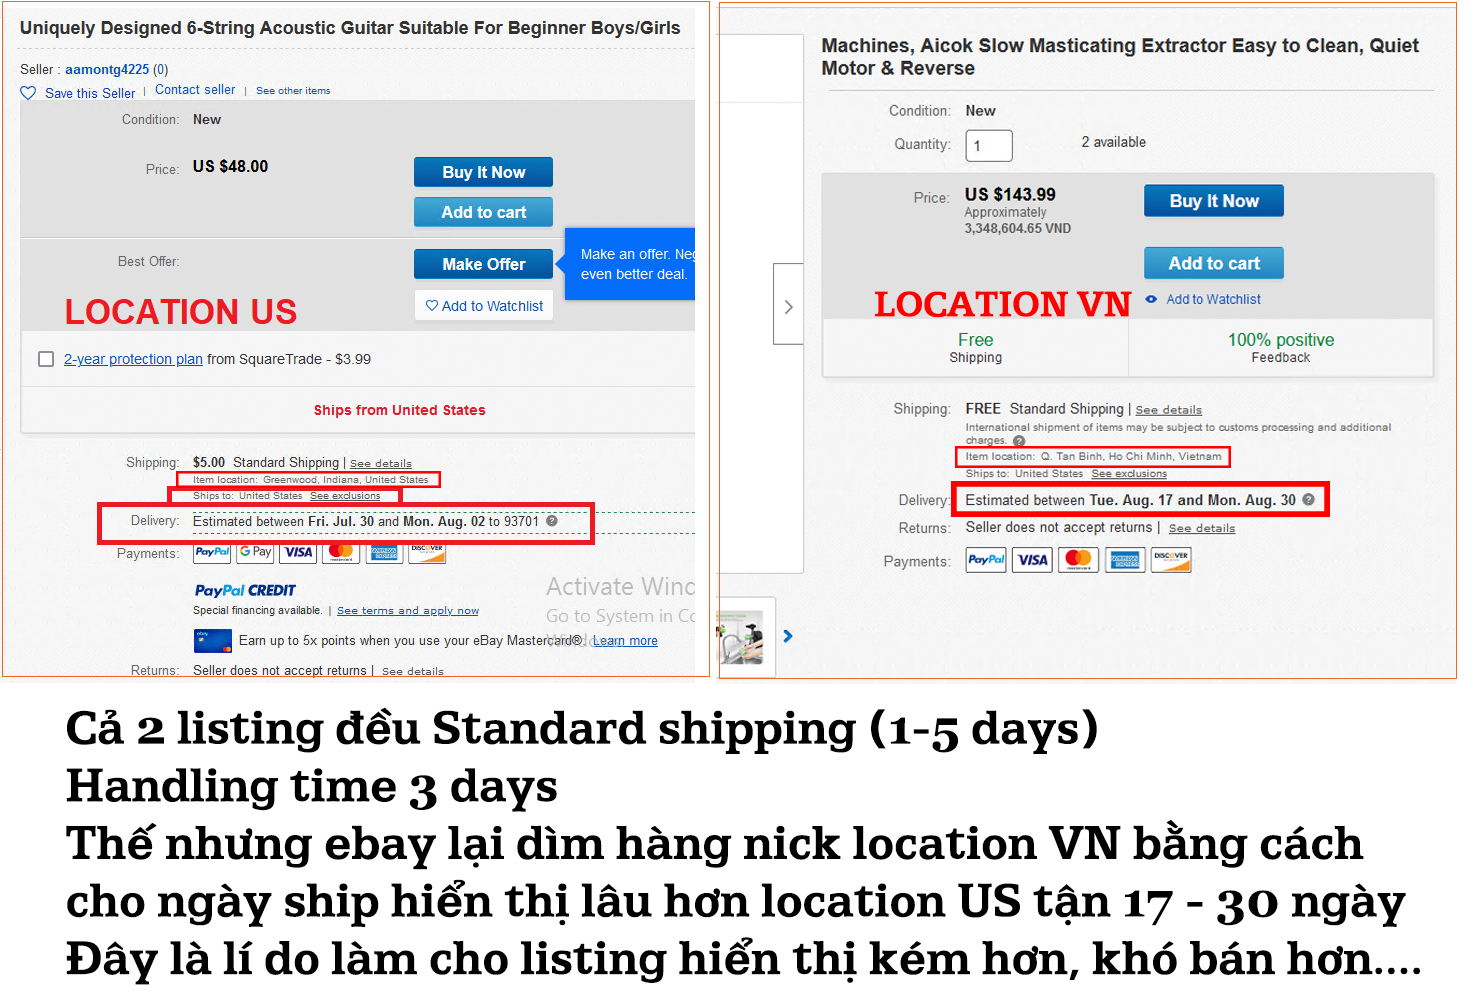 Hướng dẫn cài đặt để hiển thị tốt như location US cho location Việt